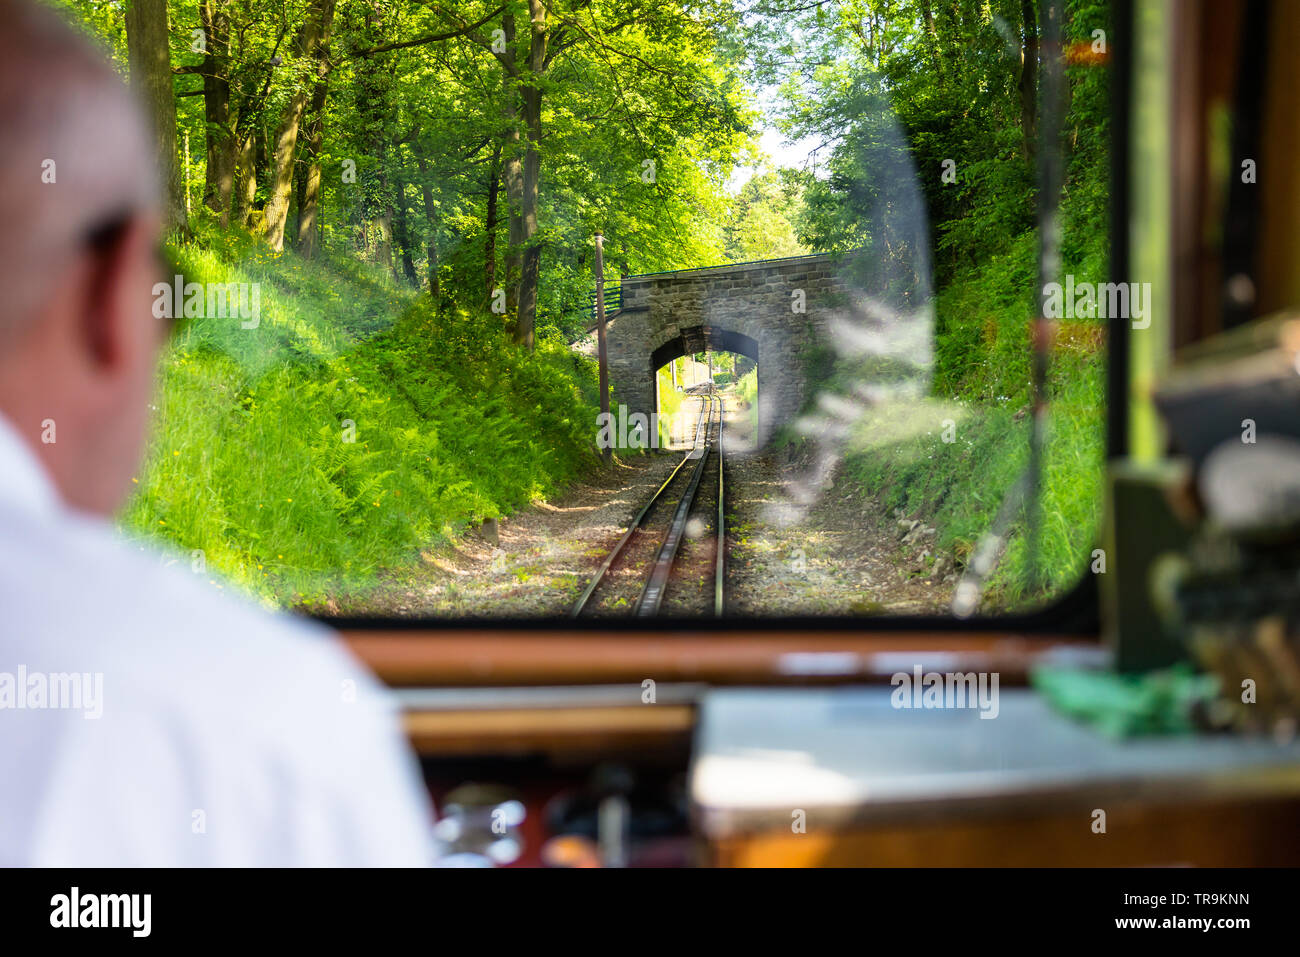 Une vue de la fenêtre d'un train de chemin de fer, un moteur visible pilote exécuté un train, des rails, des arbres et un ciel bleu avec des nuages blancs. Banque D'Images